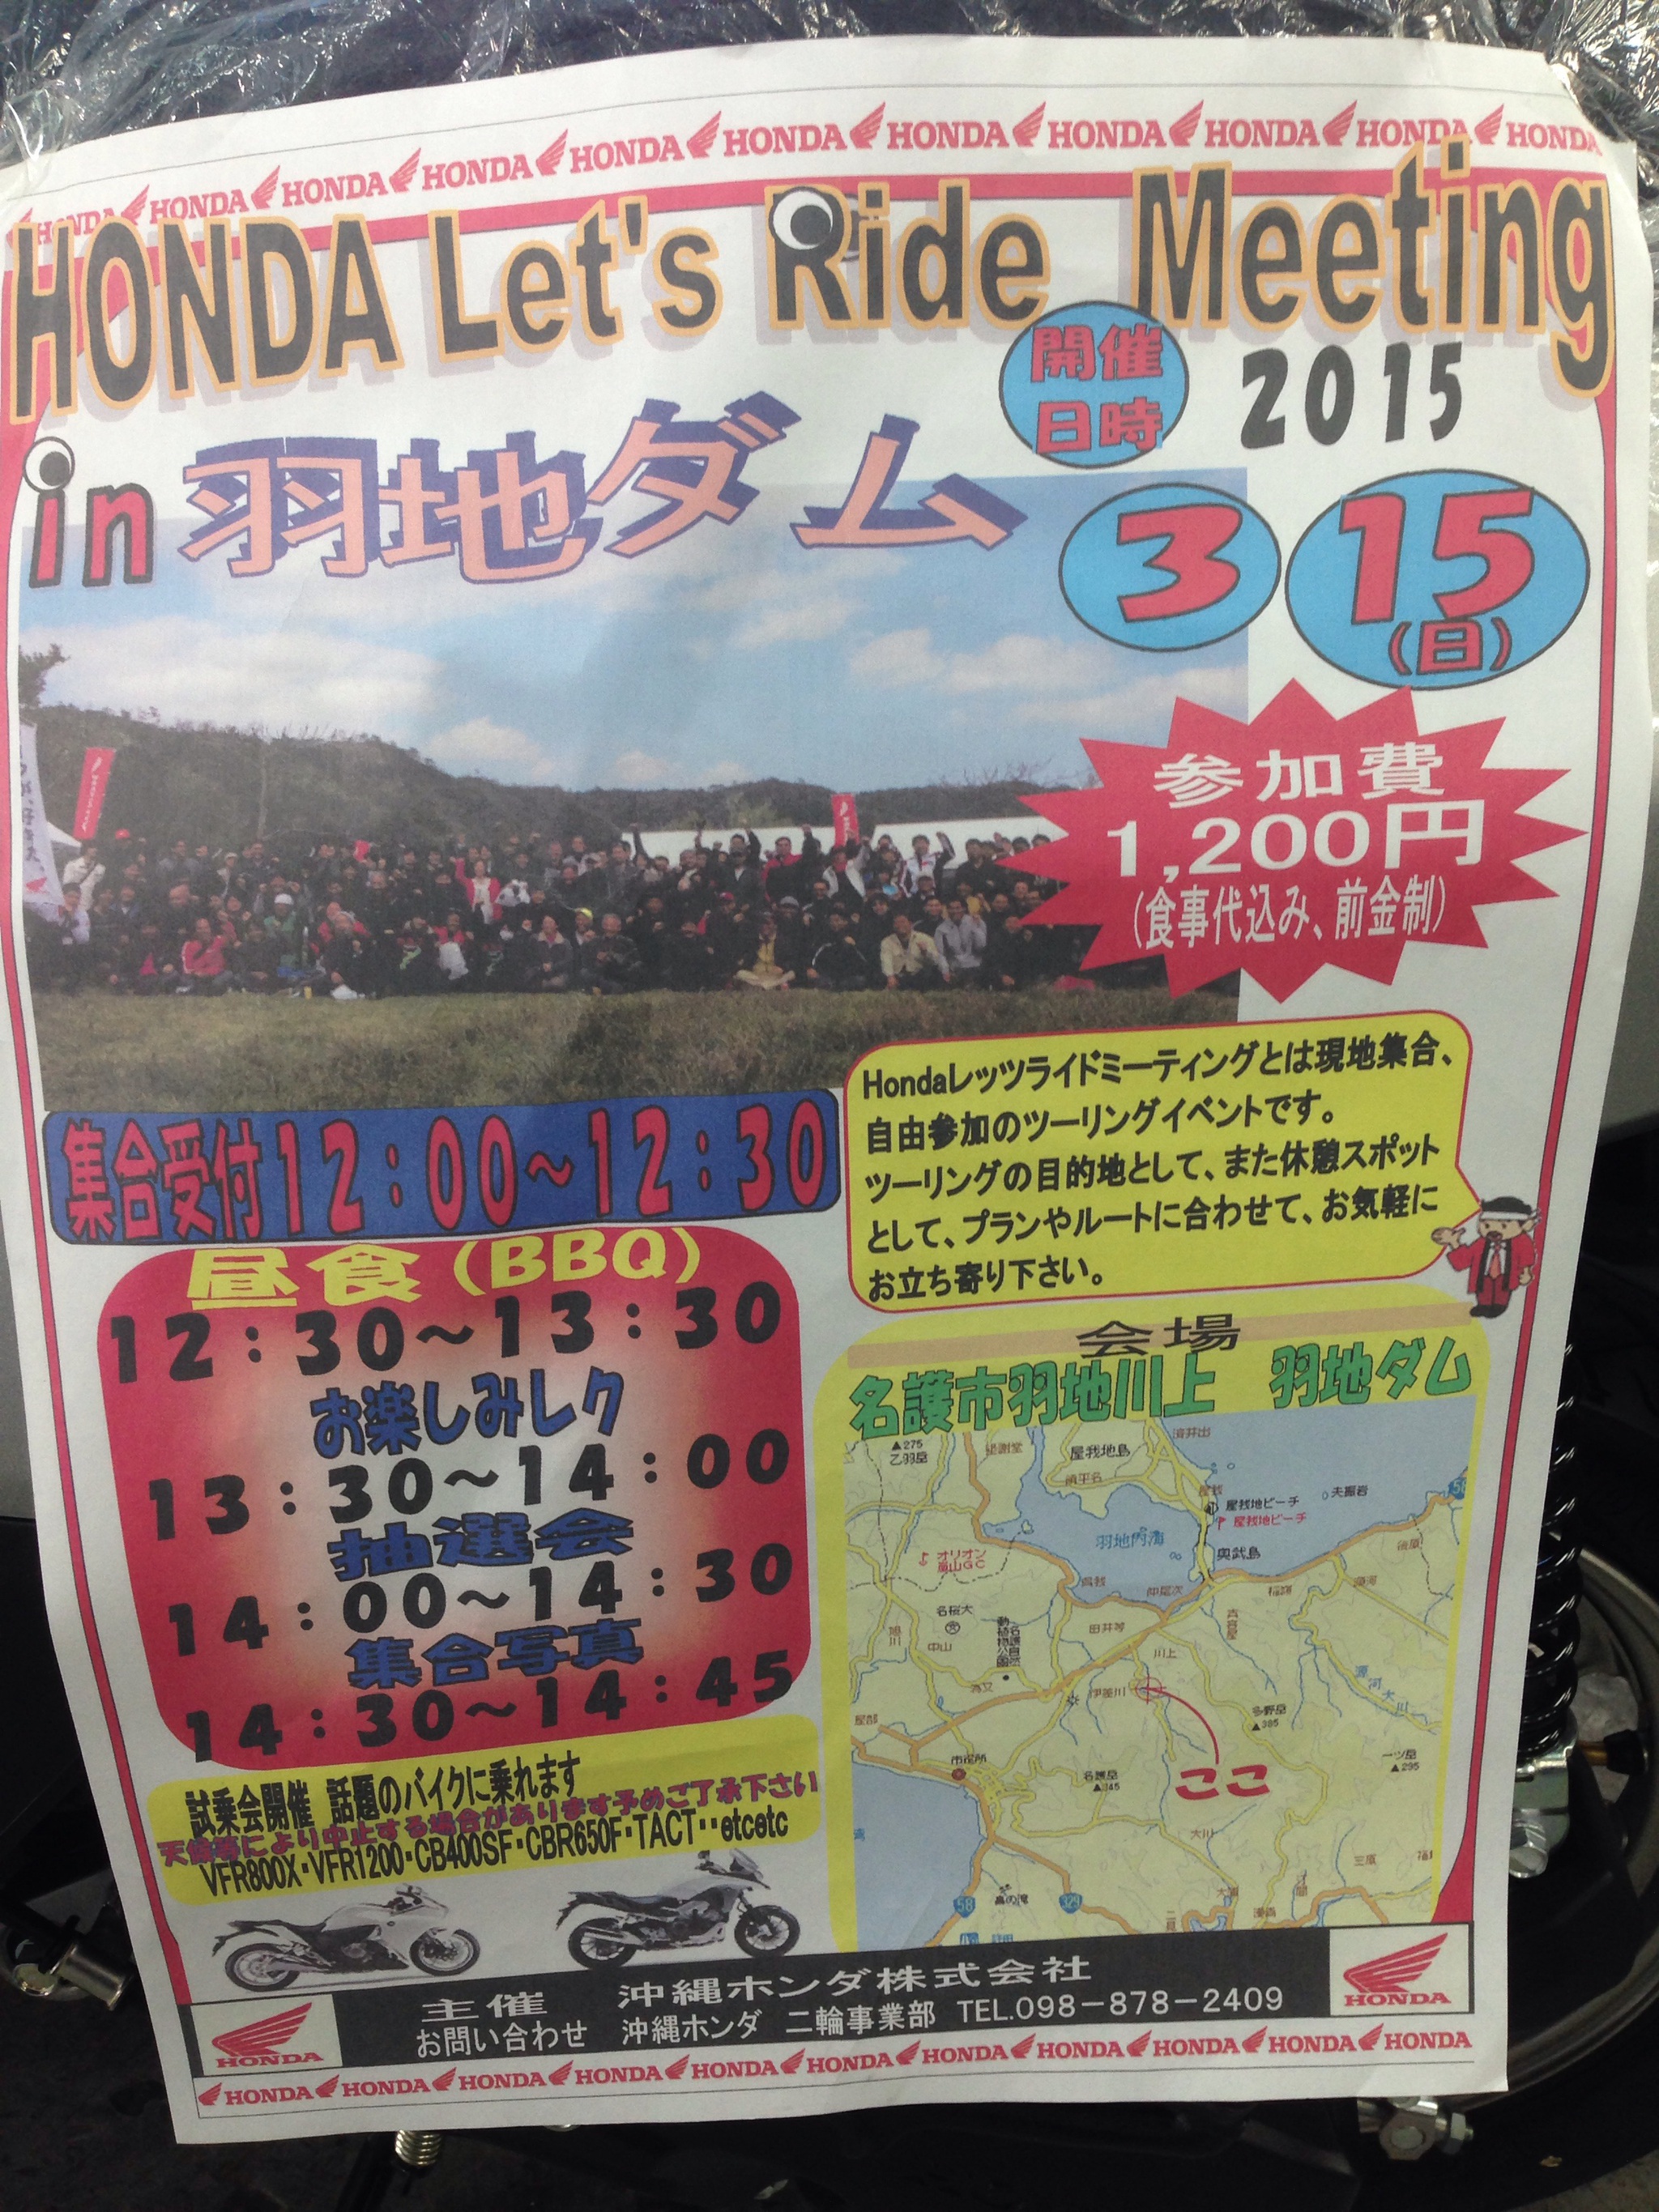 【HONDA】ツーリング!!